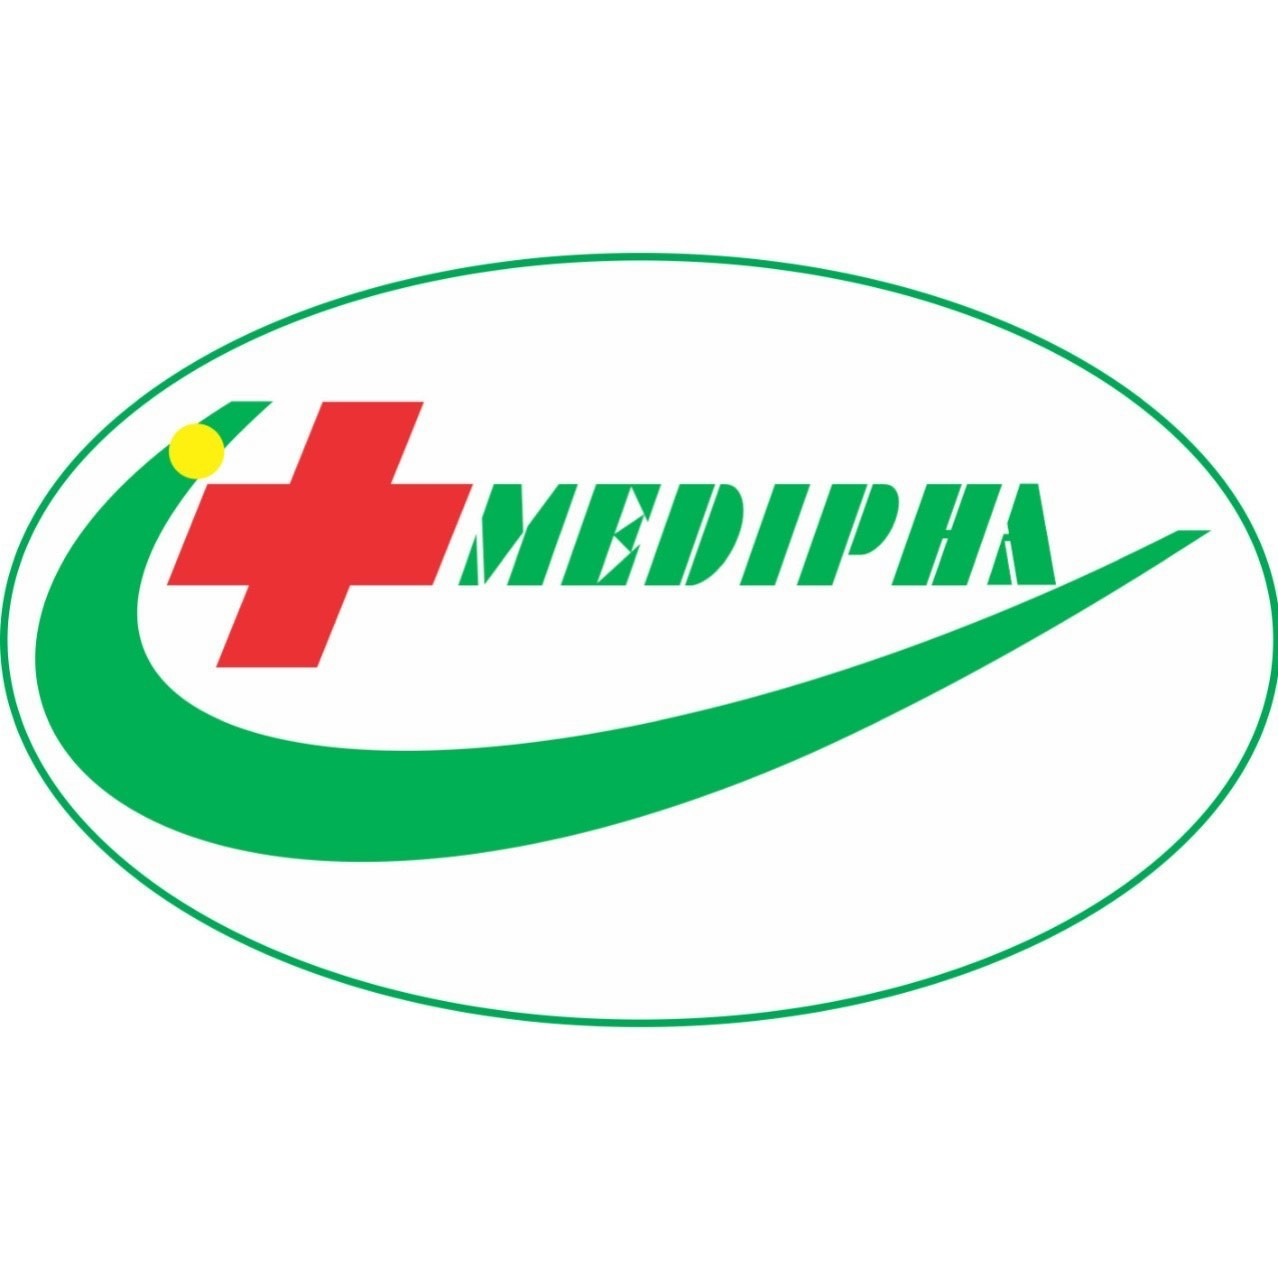 Logo Công ty Cổ phần Tập đoàn Medipha